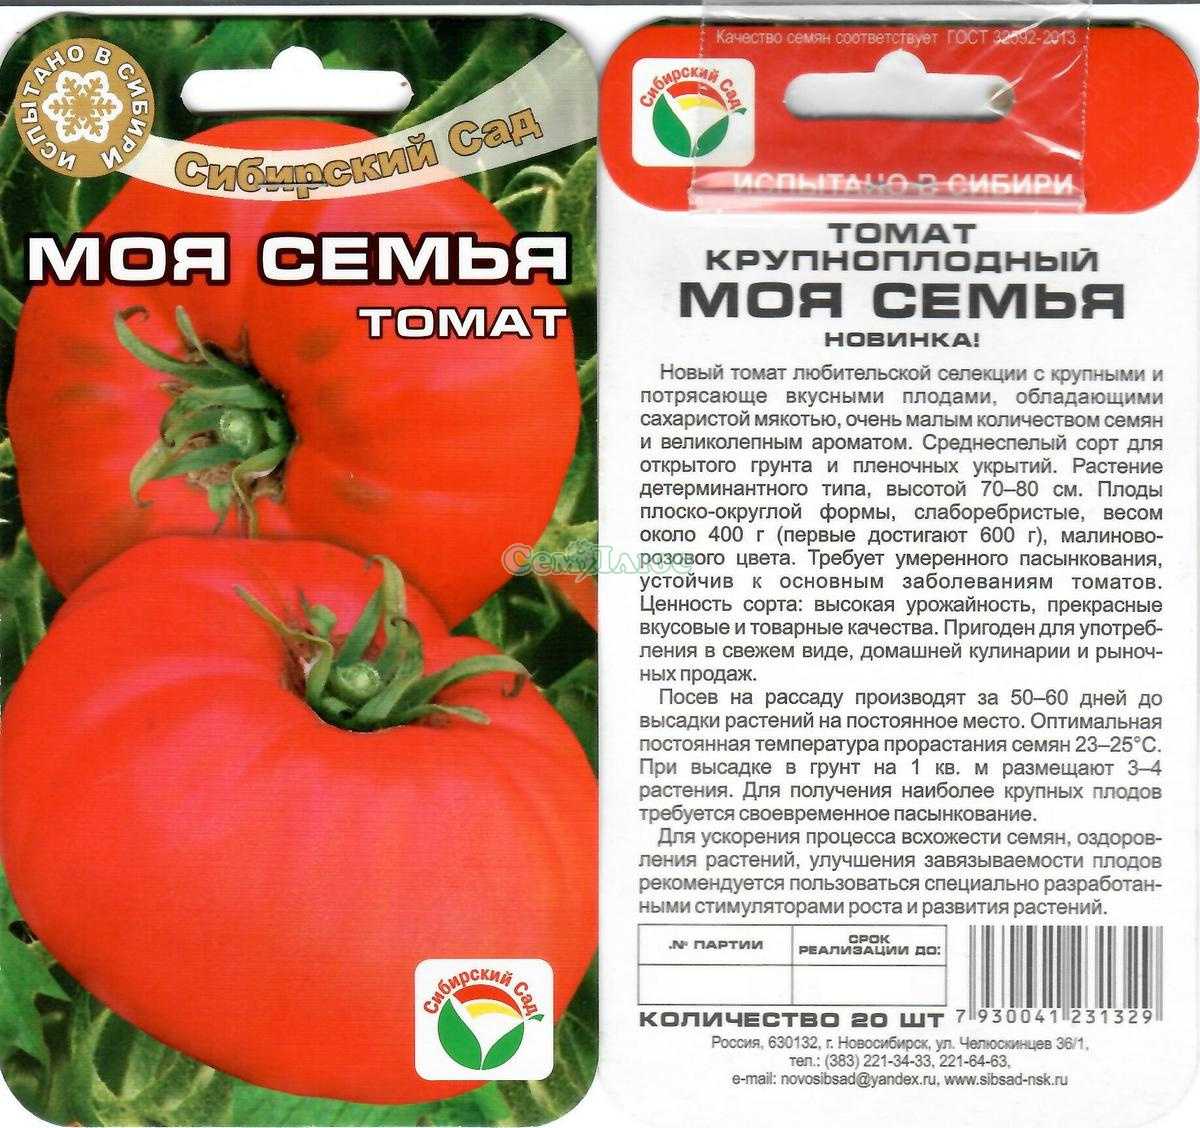 Сорт томатов любимый праздник отзывы